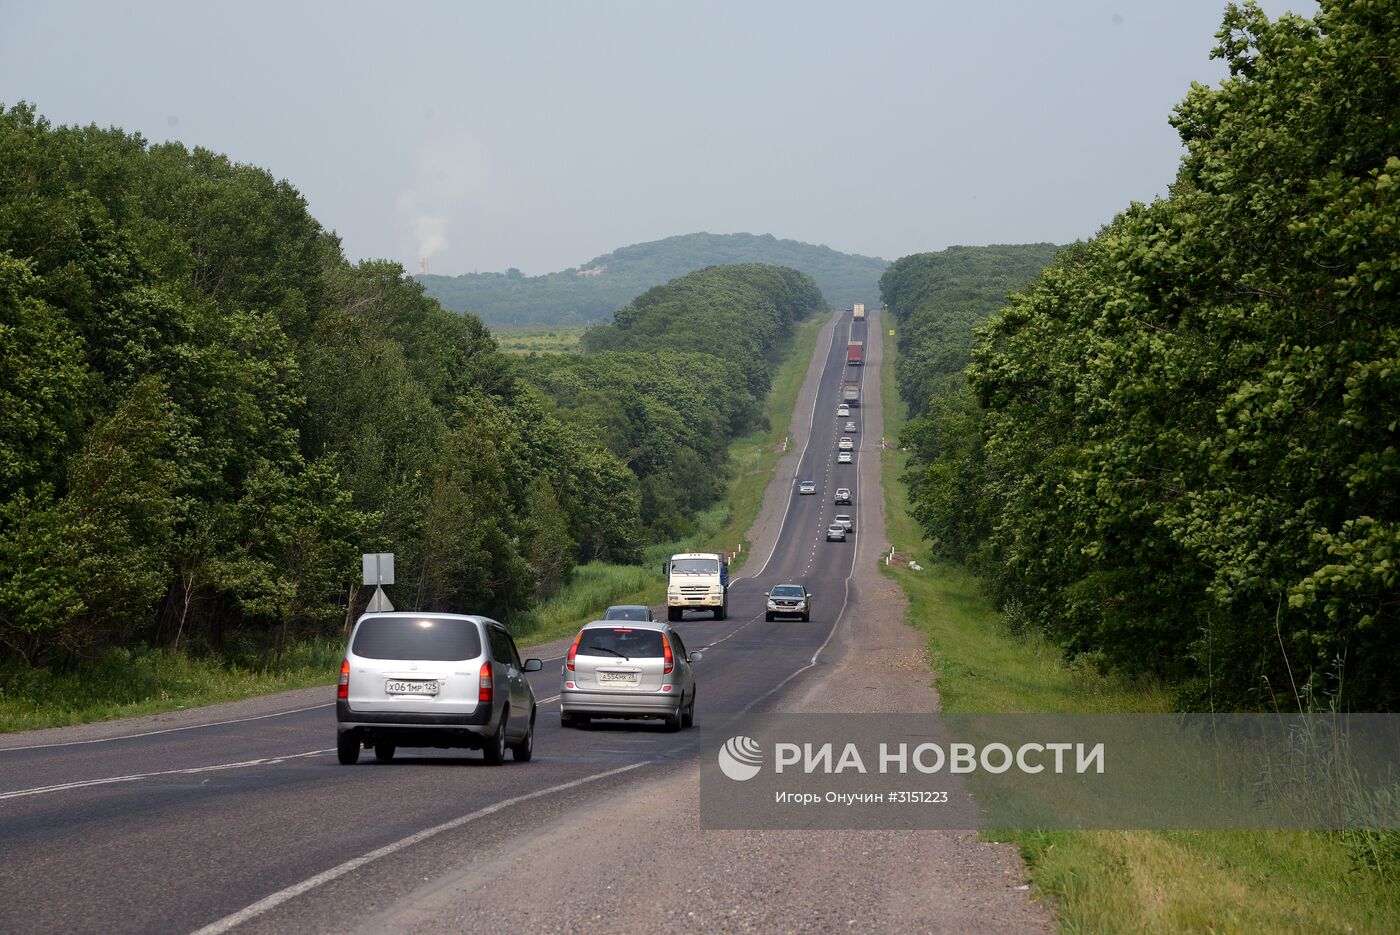 Автомобильная дорога А370 "Уссури" Владивосток - Хабаровск